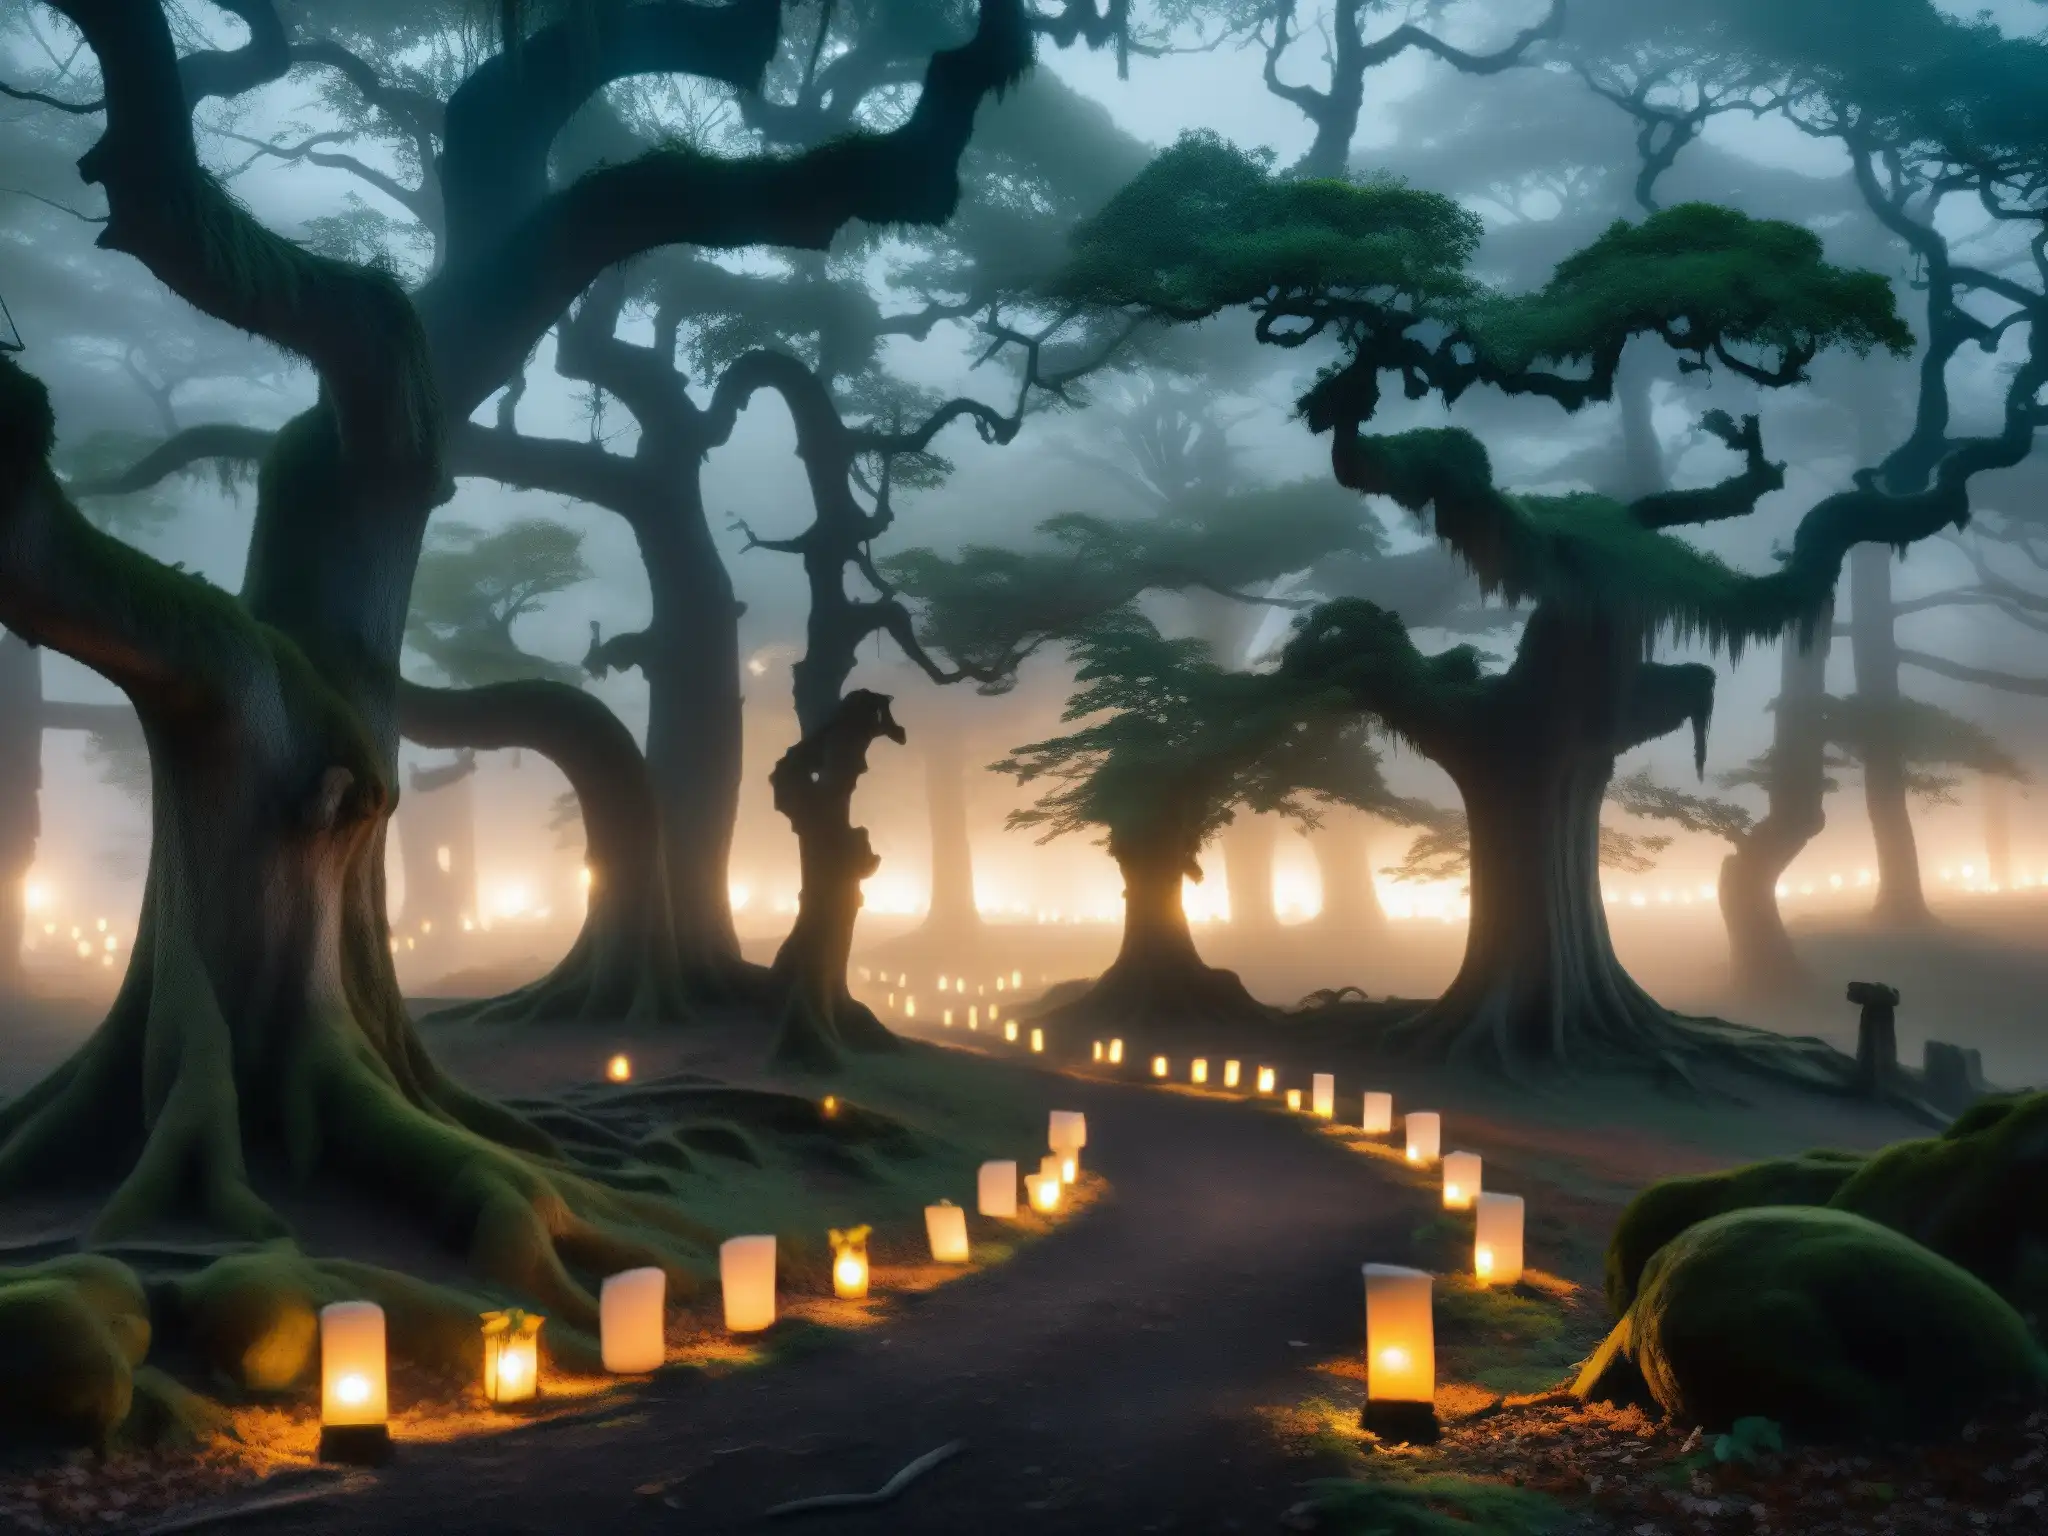 Un bosque misterioso y neblinoso al anochecer, con árboles retorcidos y senderos que se adentran en la oscuridad